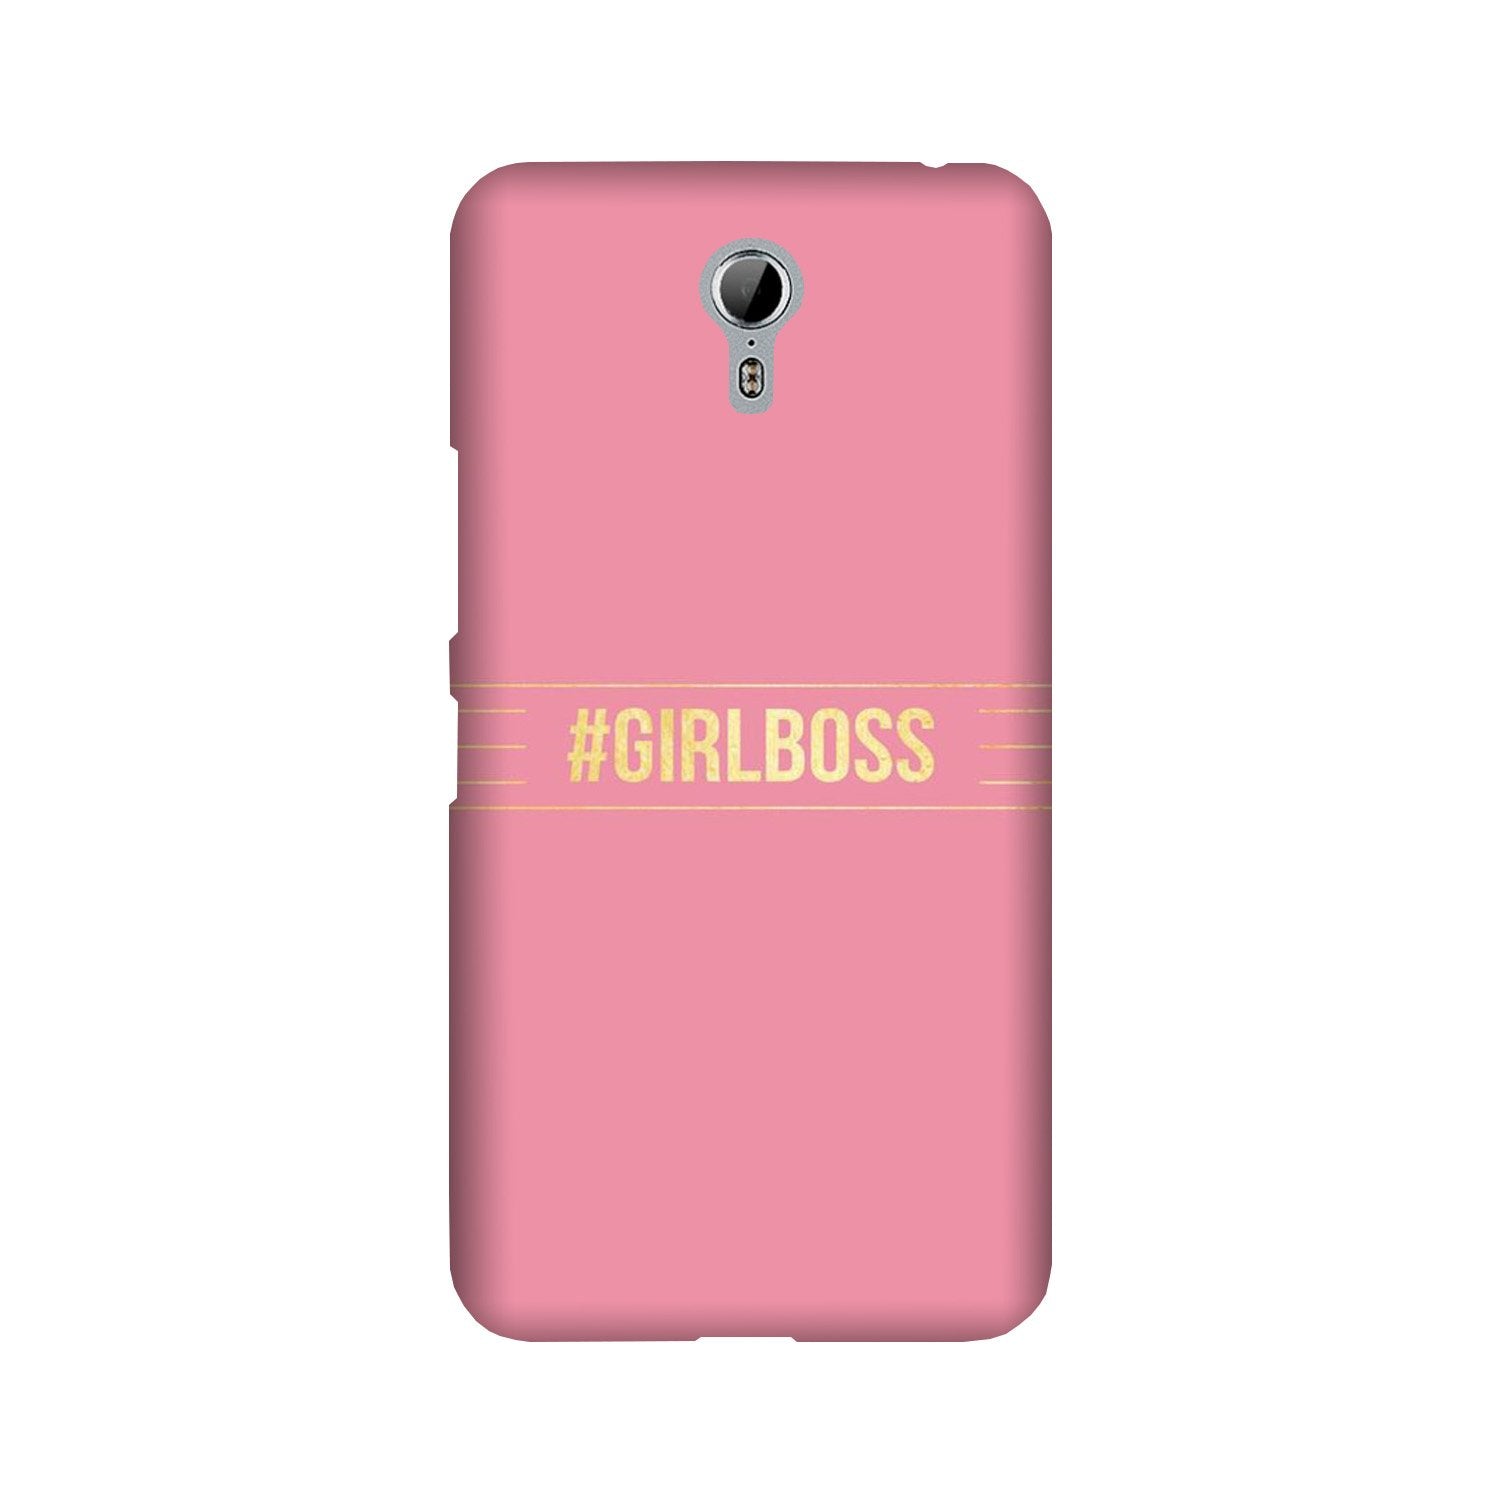 Girl Boss Pink Case for Lenovo Zuk Z1 (Design No. 263)